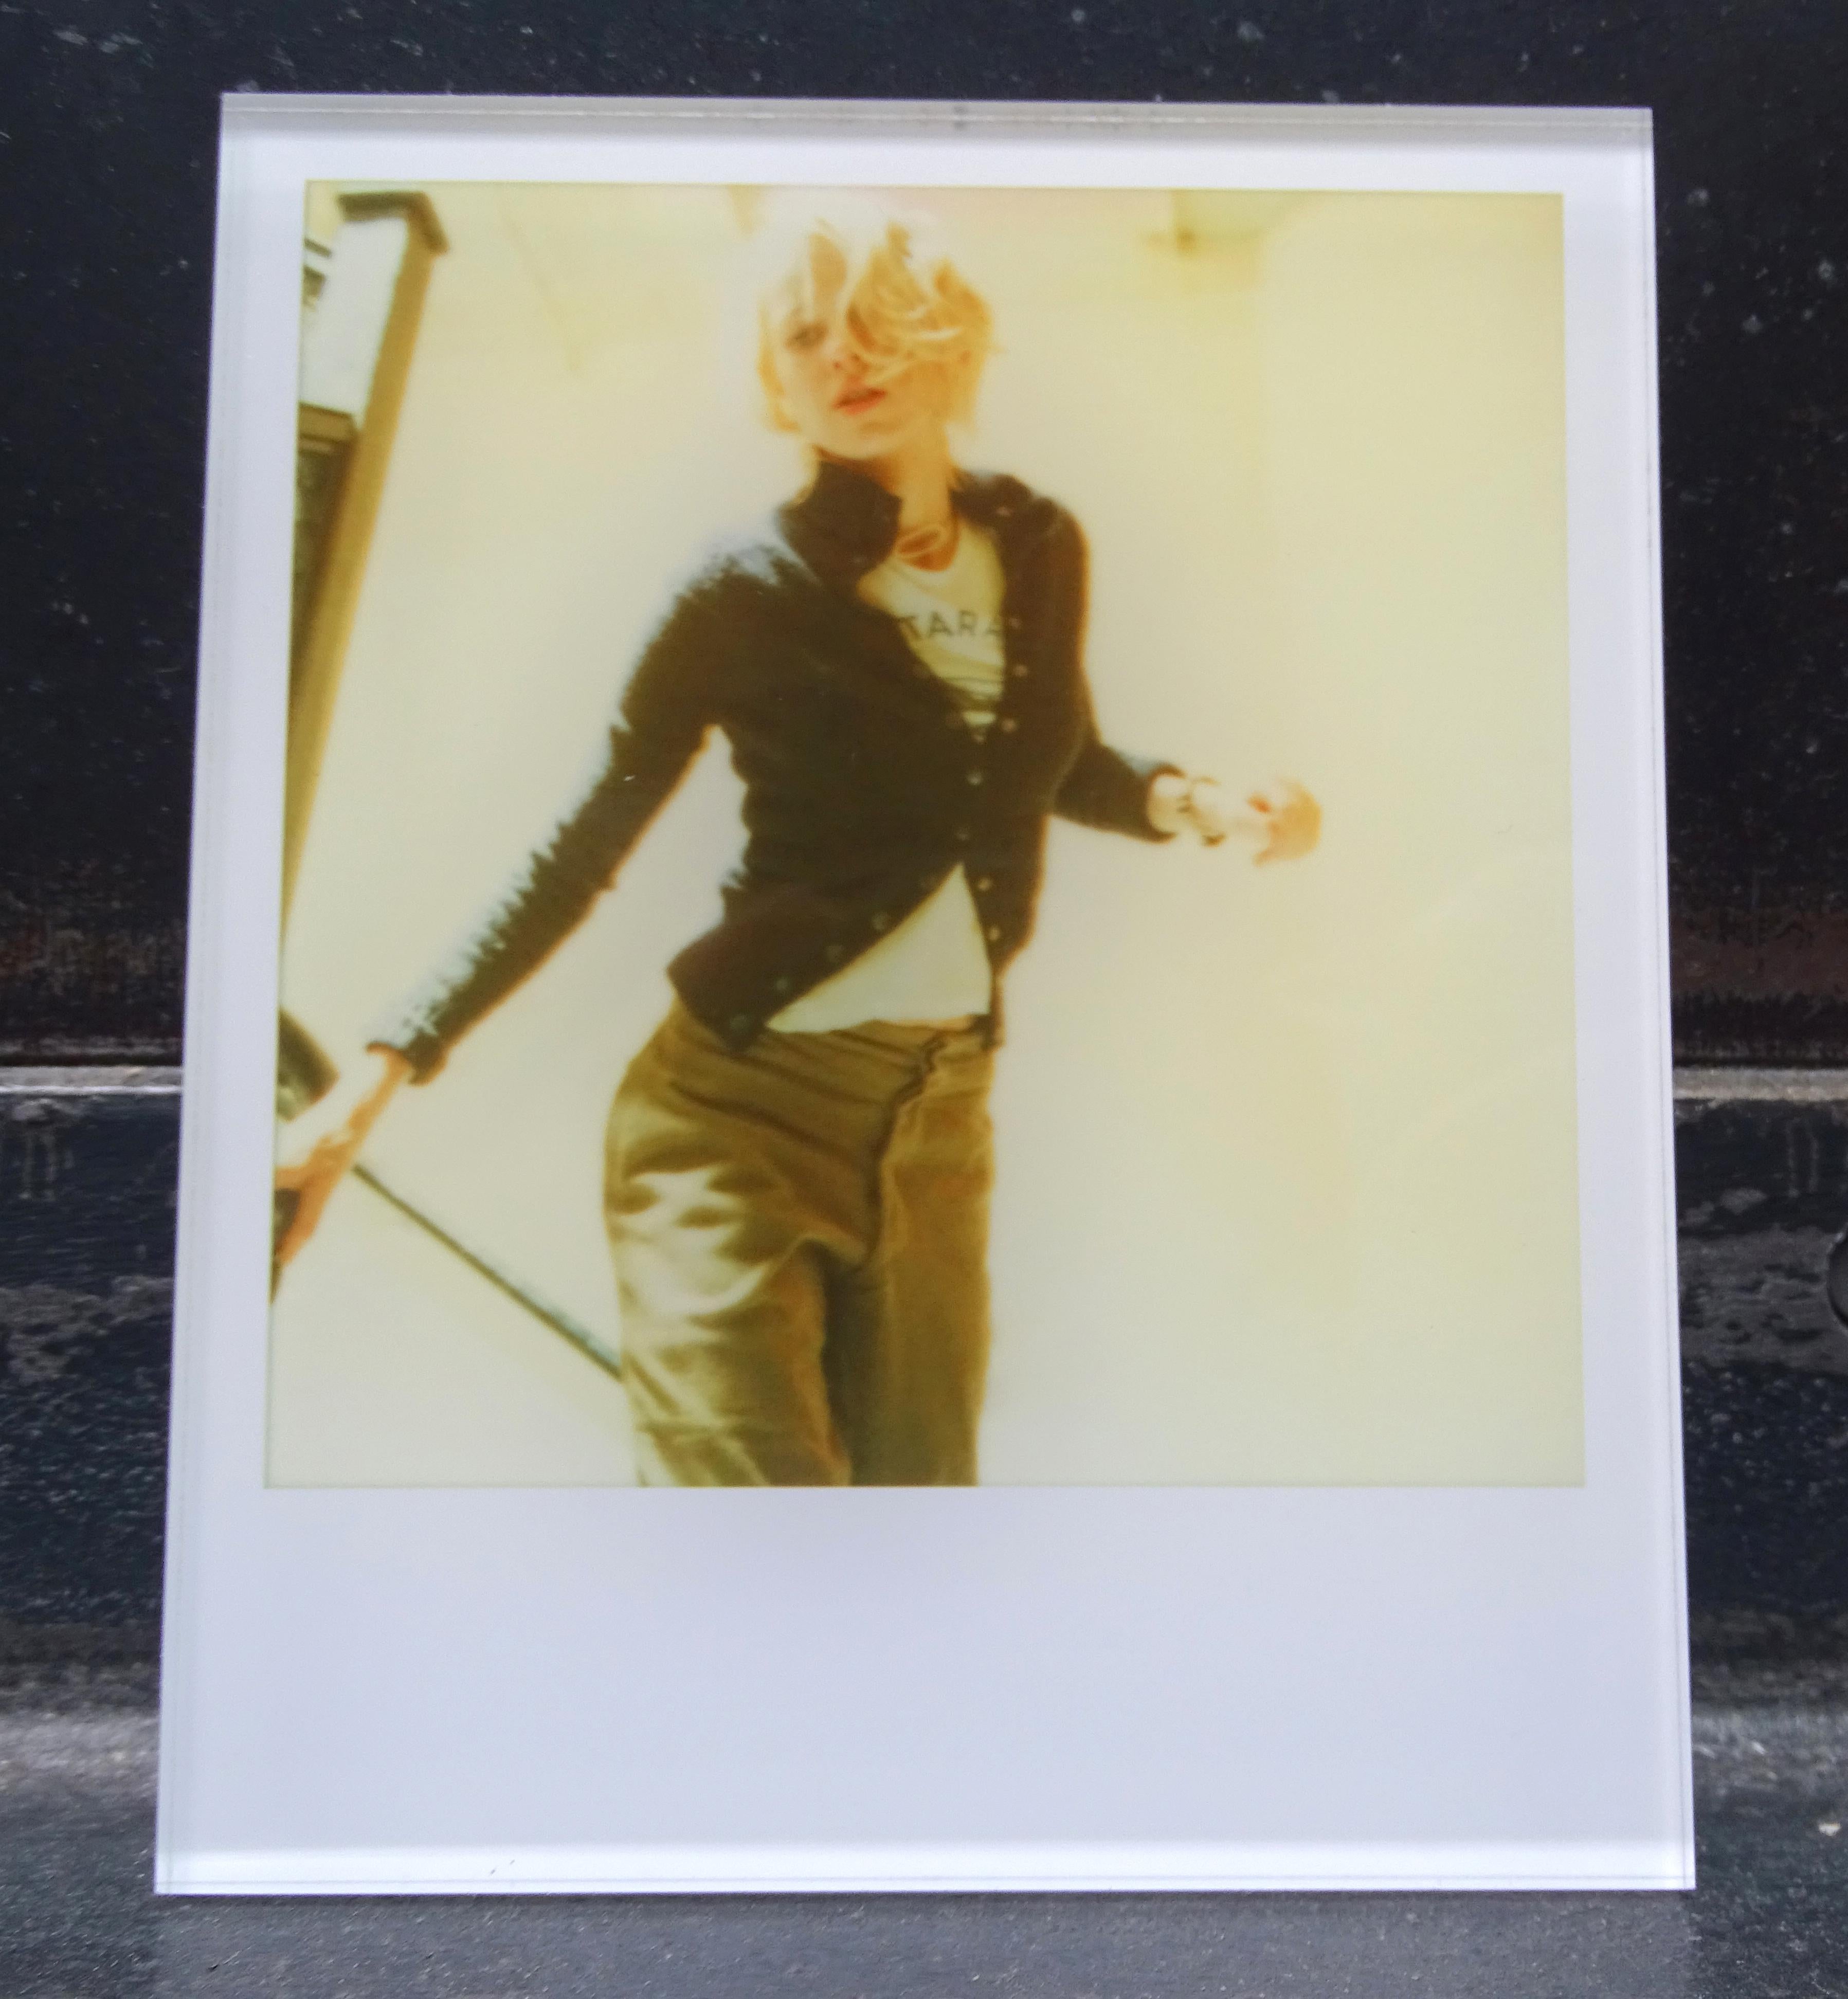 Les minis de Stefanie Schneider
Lila qui descend les escaliers (Stay) - avec Naomi Watts, 2006
signé et marque de signature au vers vers vers vers
Photographies numériques couleur Lambda basées sur un Polaroid

extrait du film "Stay" de Marc